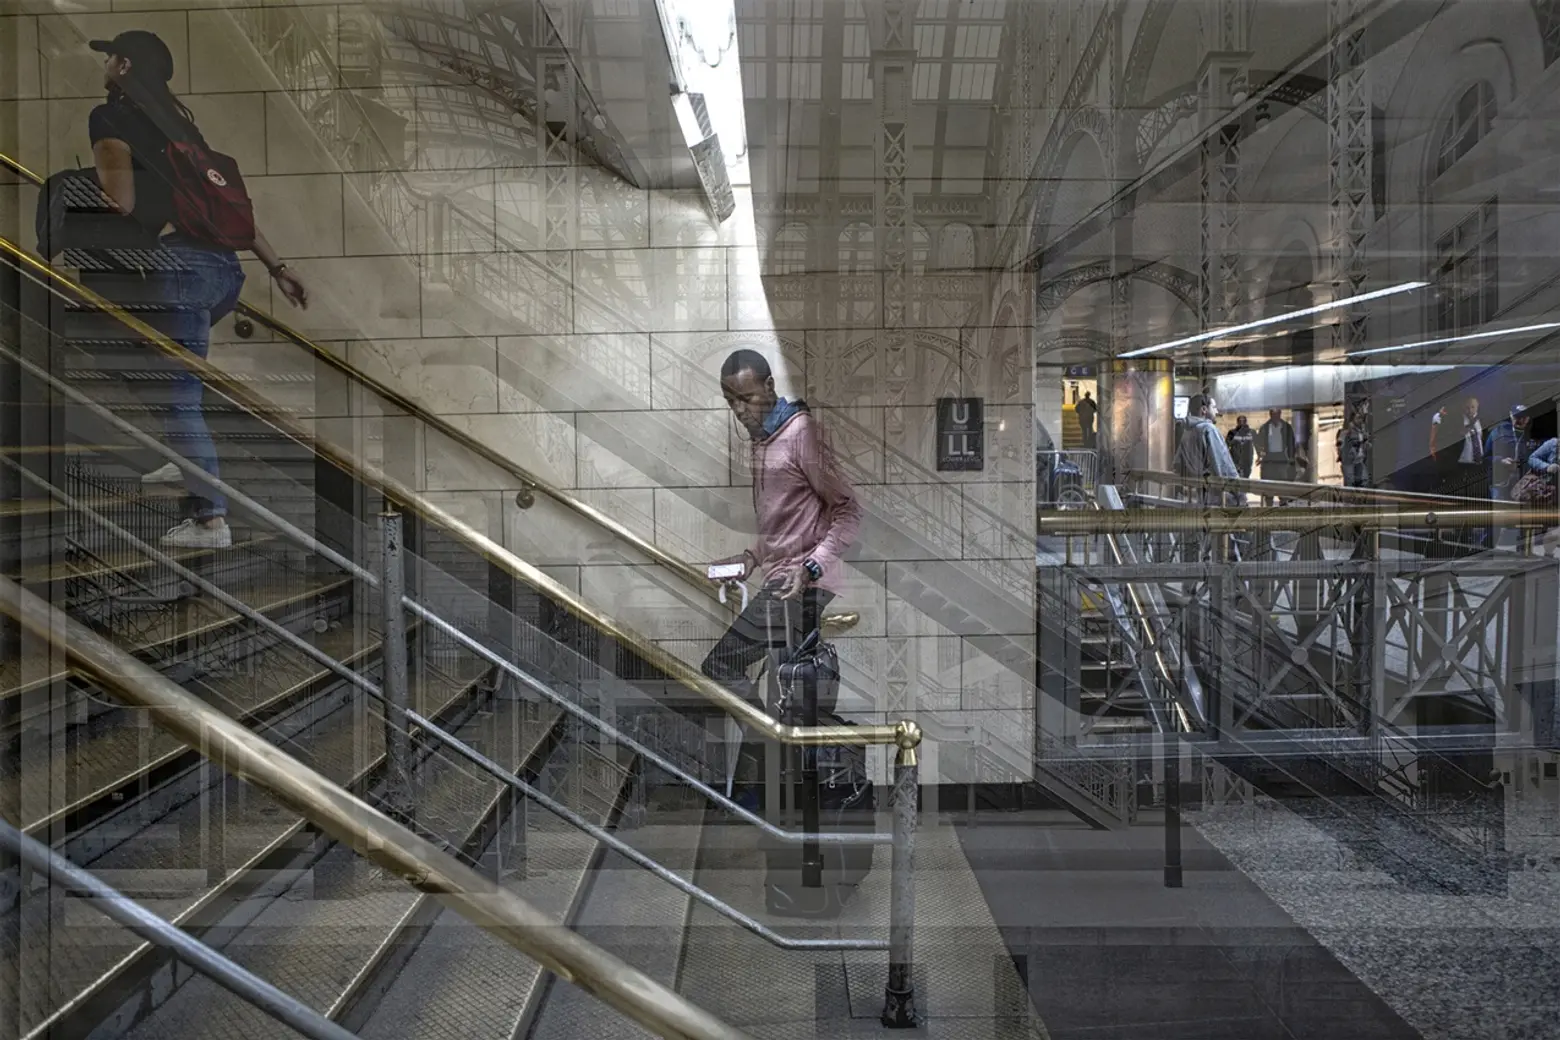 Photography, Penn Station, Art, Zach Gross